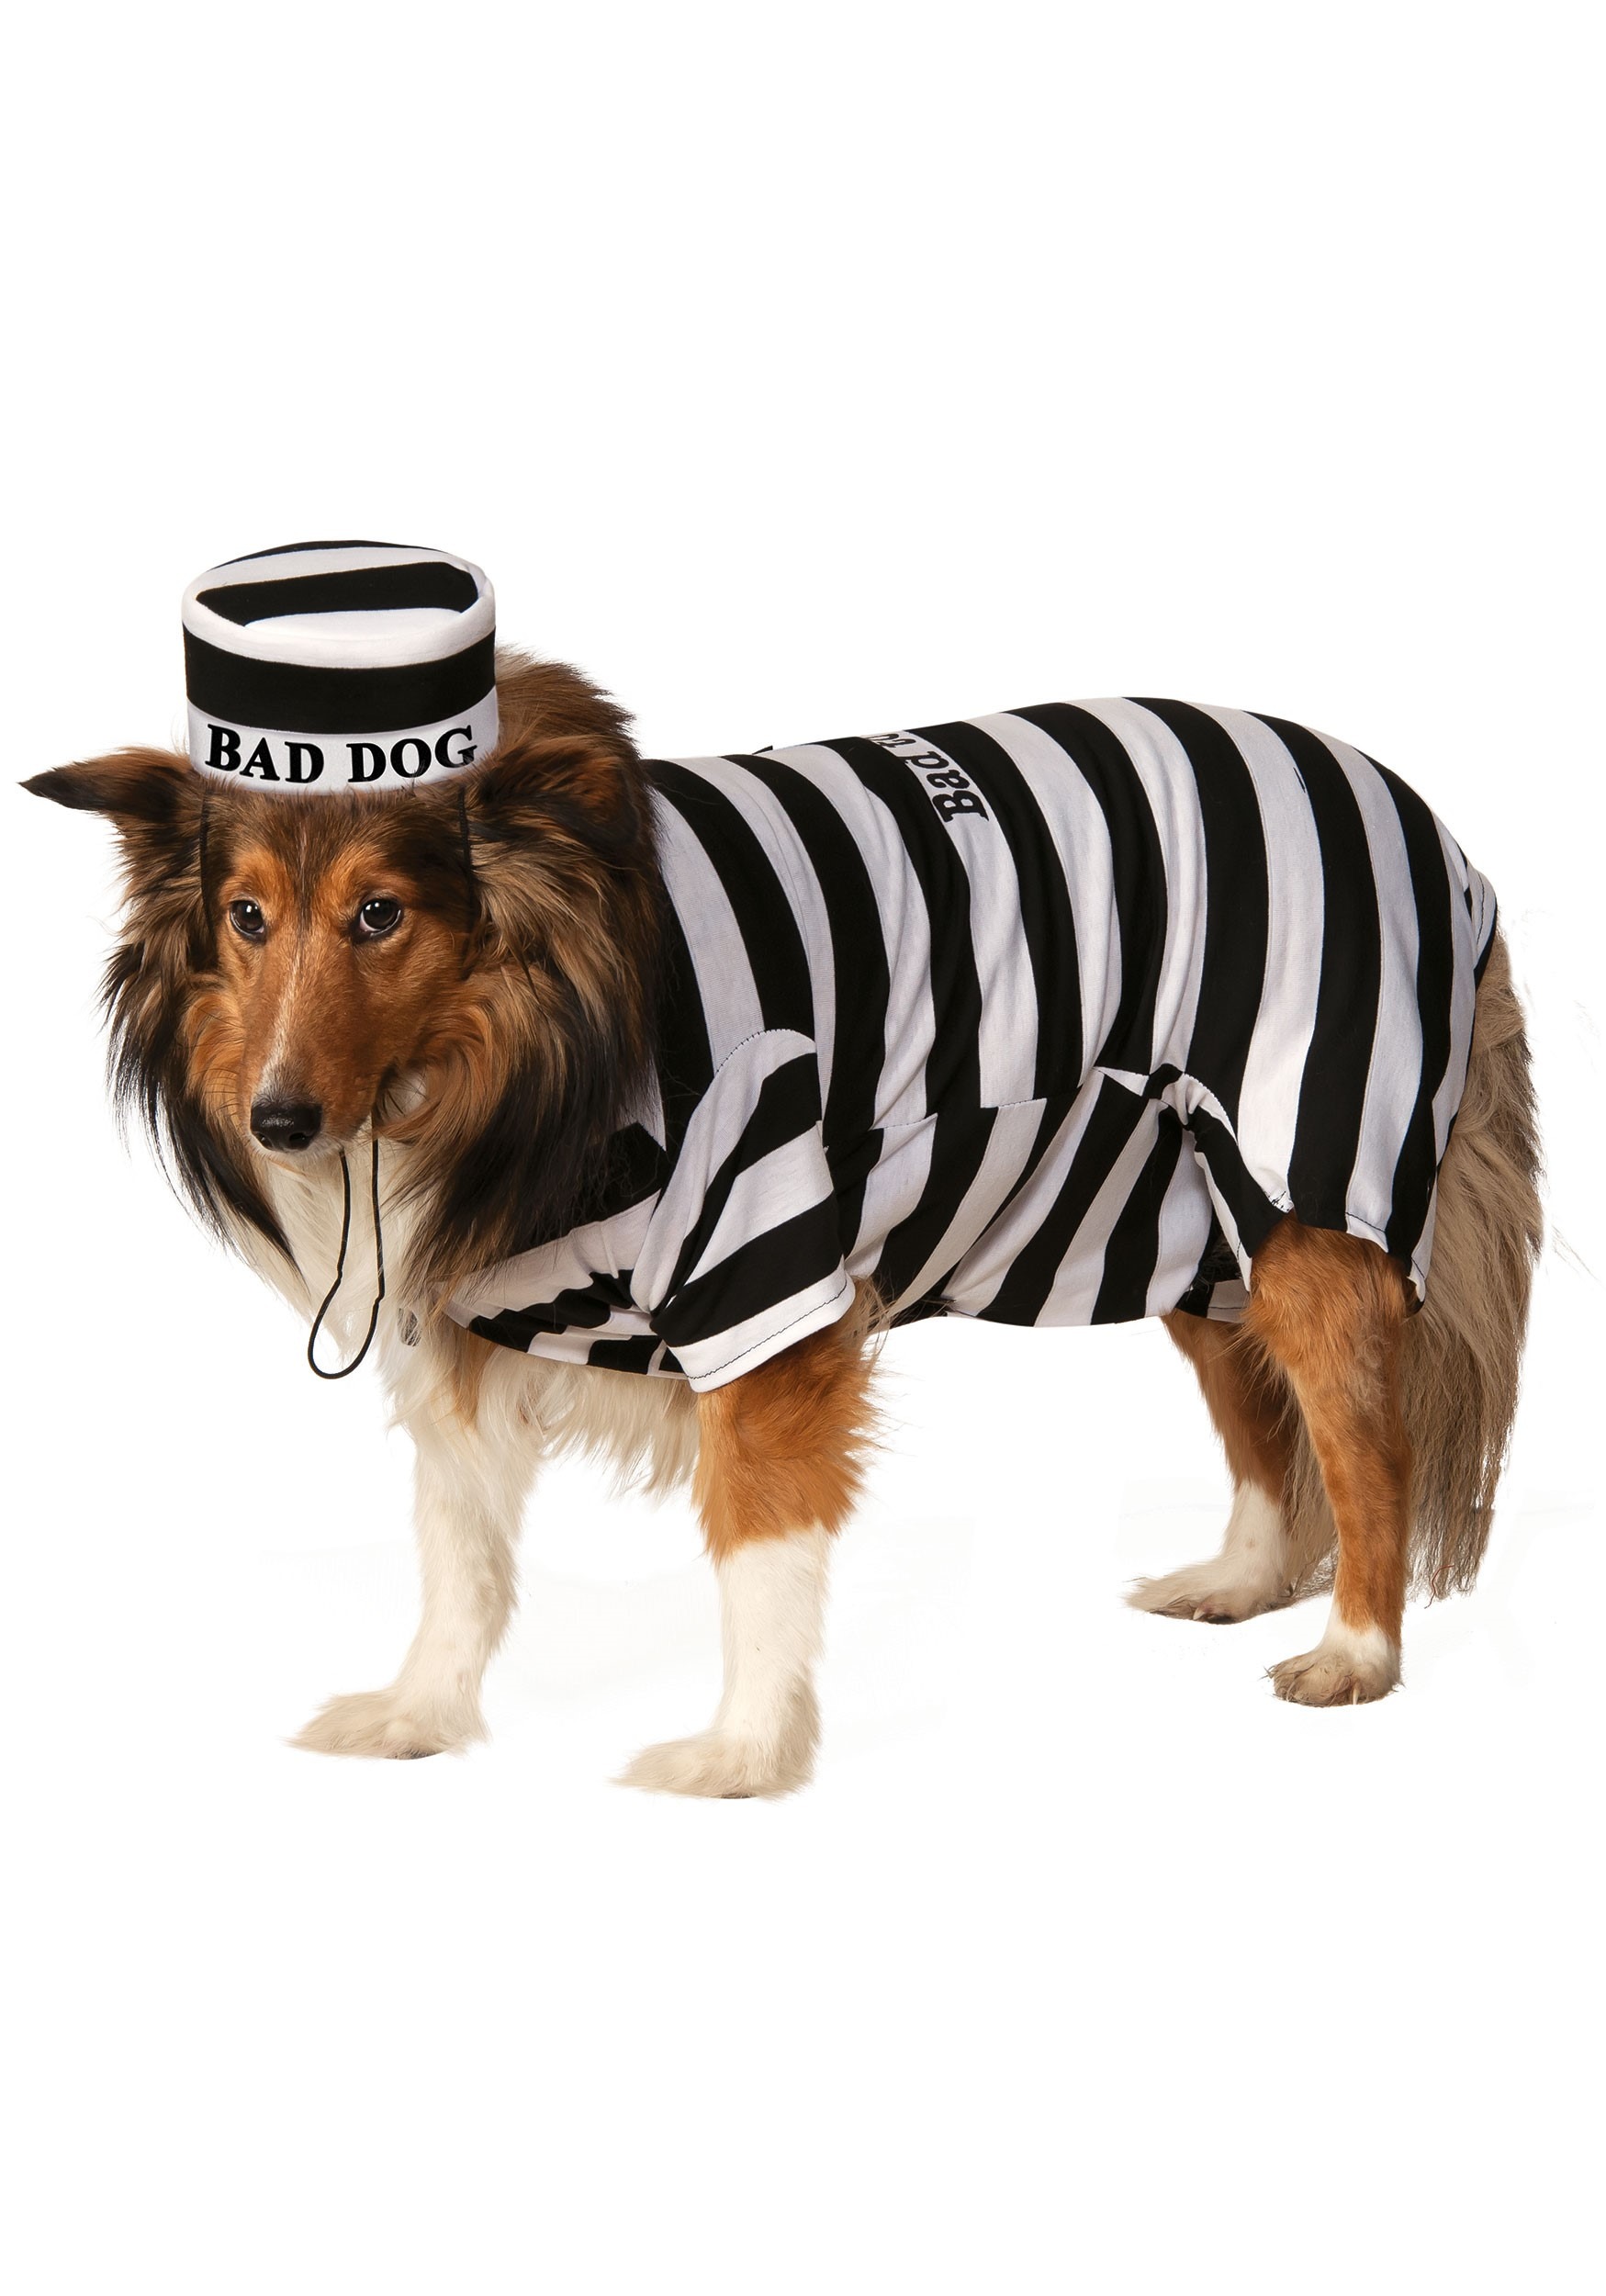 Pet Prisoner Costume